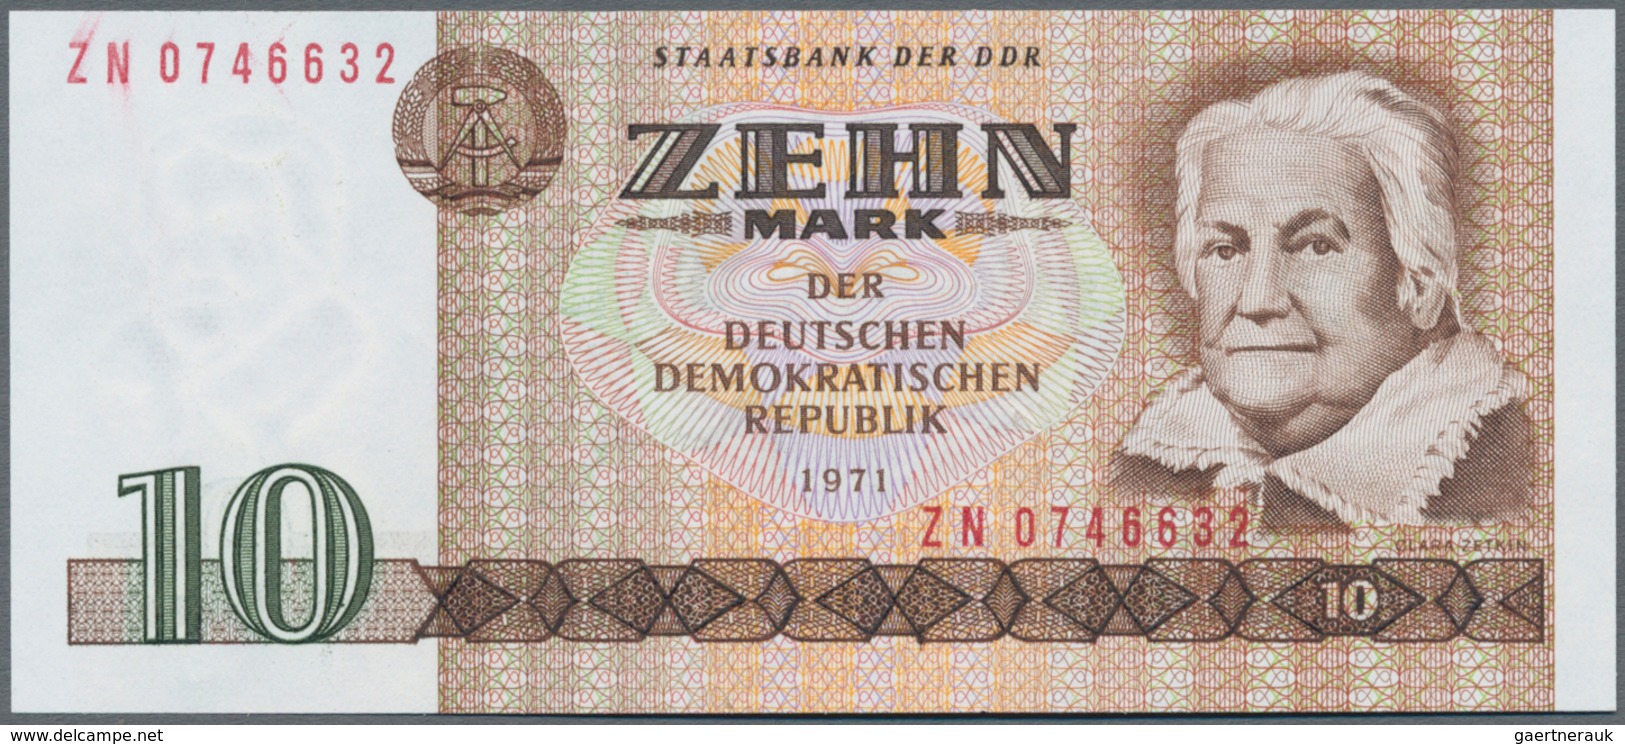 Deutschland - DDR: Satz Banknoten DDR 1971/75 von 5 bis 100 Mark, Ro.359-363, dazu noch 5 Kennkarten